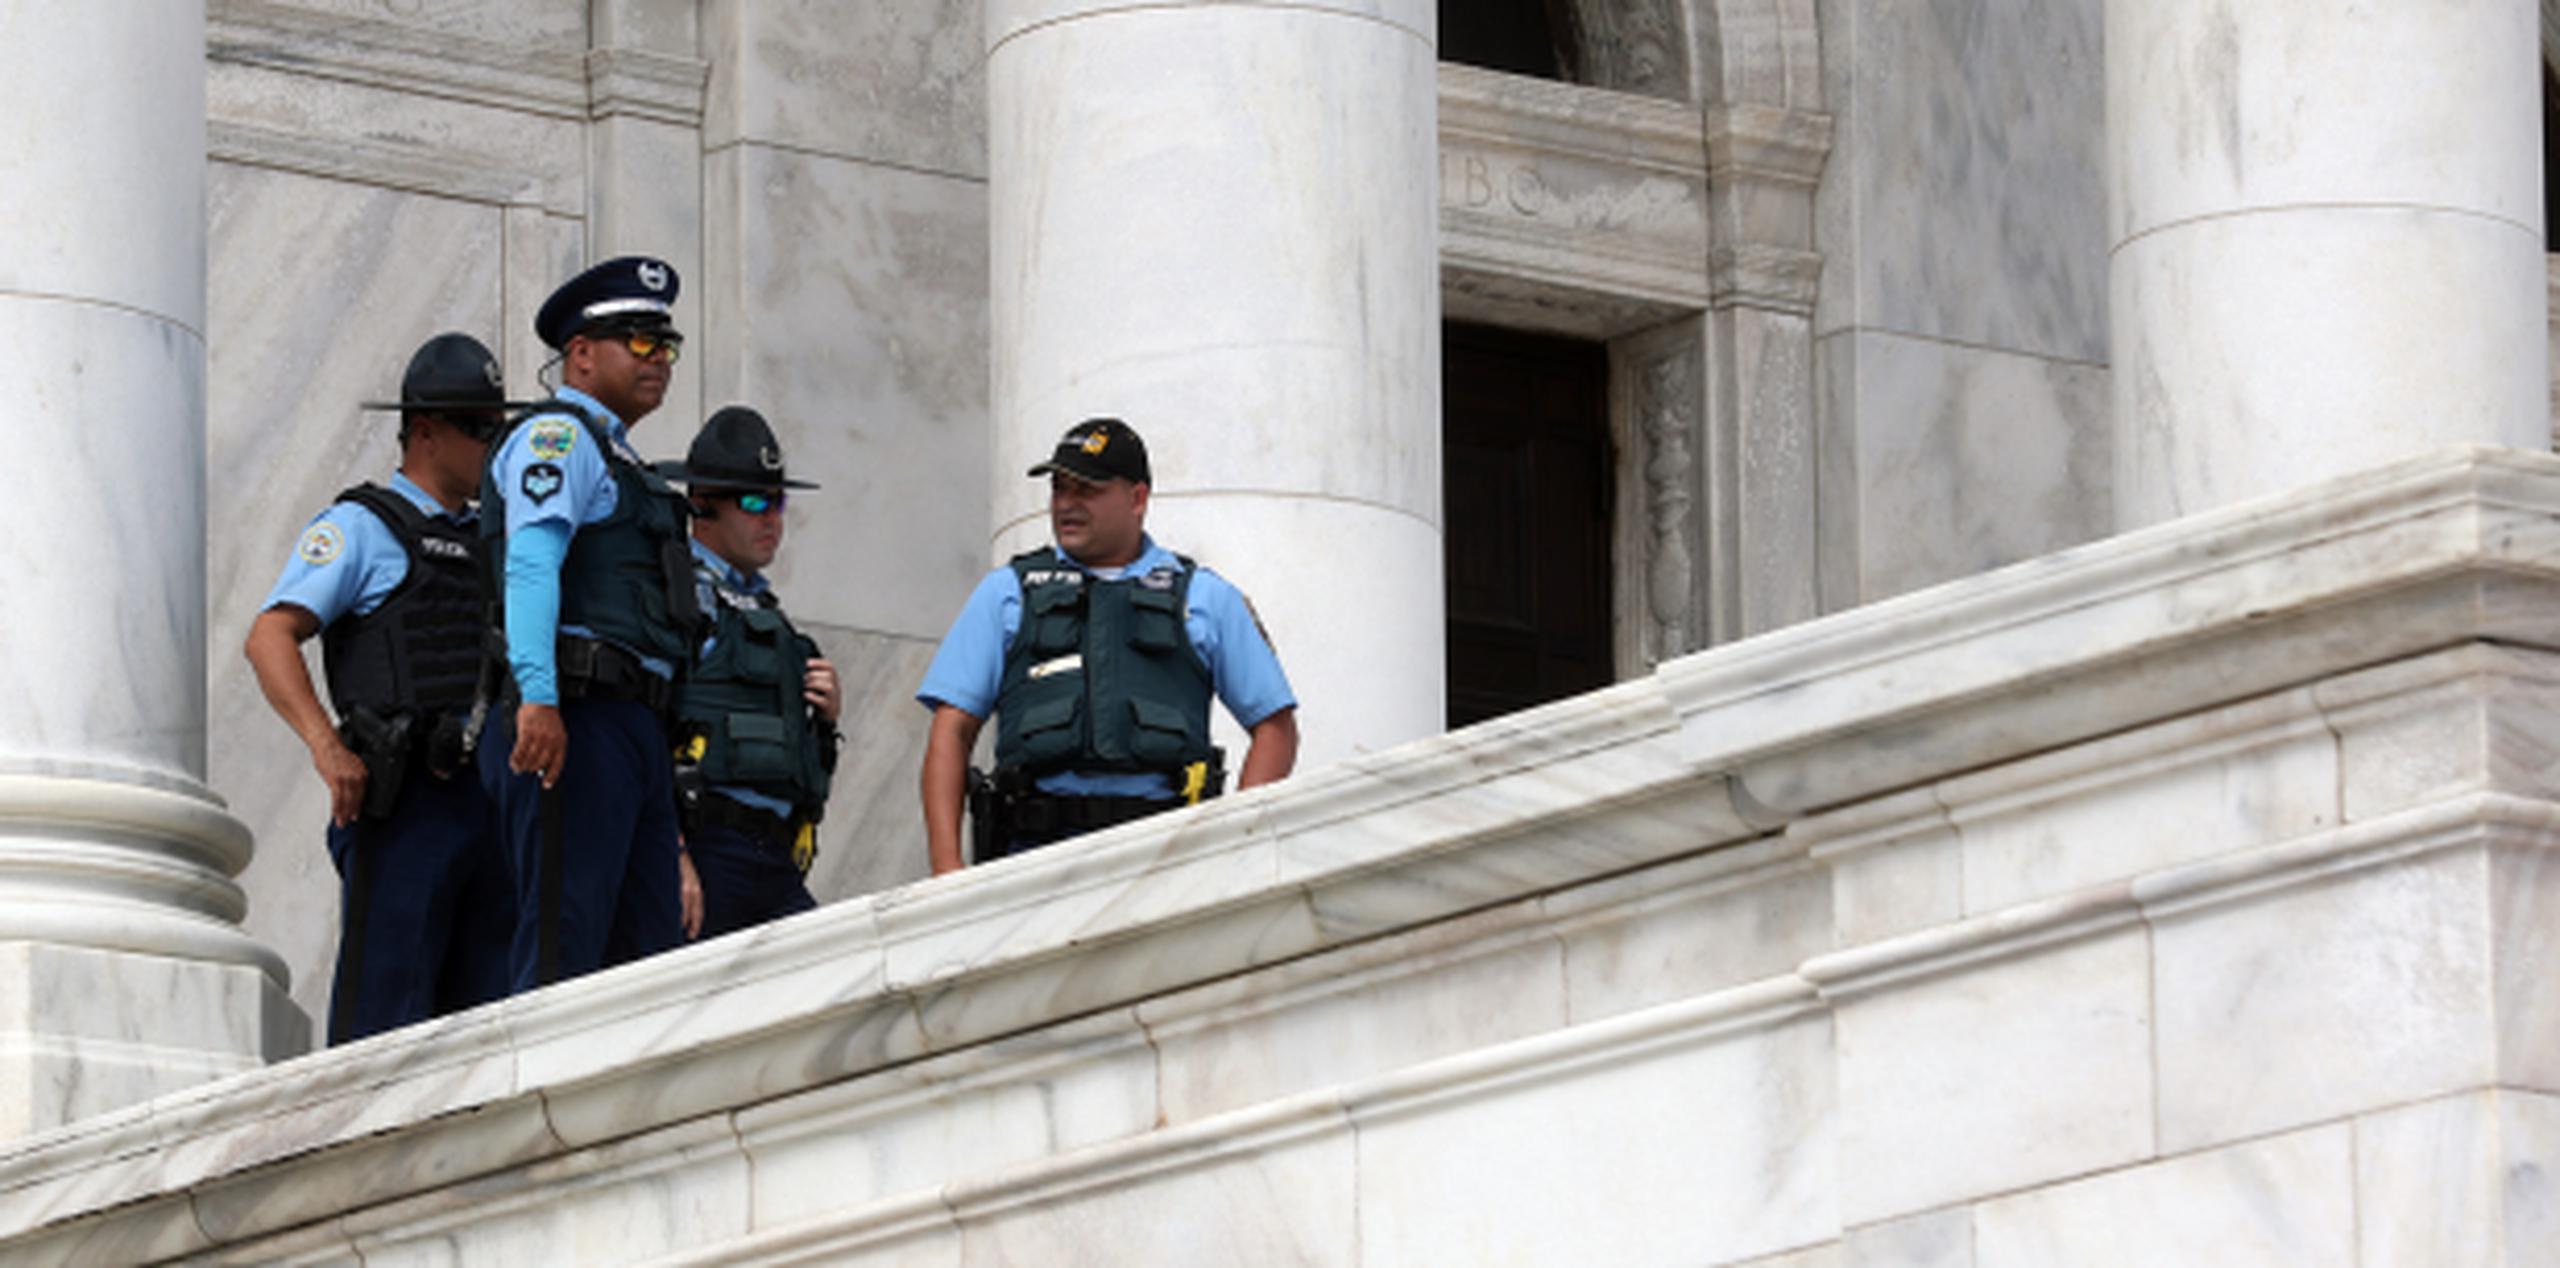 El ala sur del Capitolio tuvo un destaque policiaco por la presencia de un limitado grupo de manifestantes. (juan.martinez@gfrmedia.com)